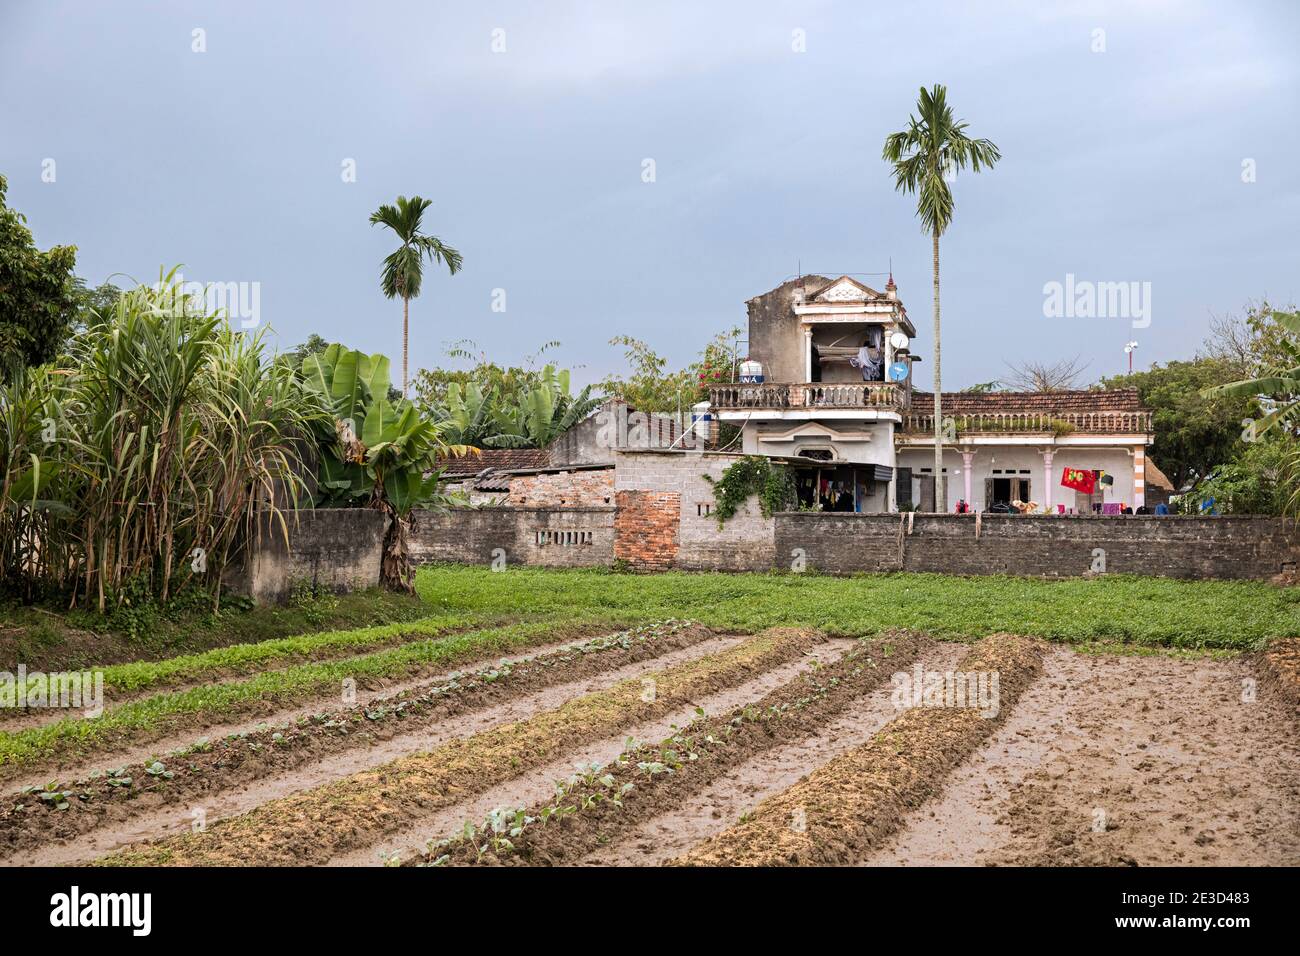 Field and farmhouse near Halong Bay / Ha Long Bay, Ninh Binh, Vietnam Stock Photo